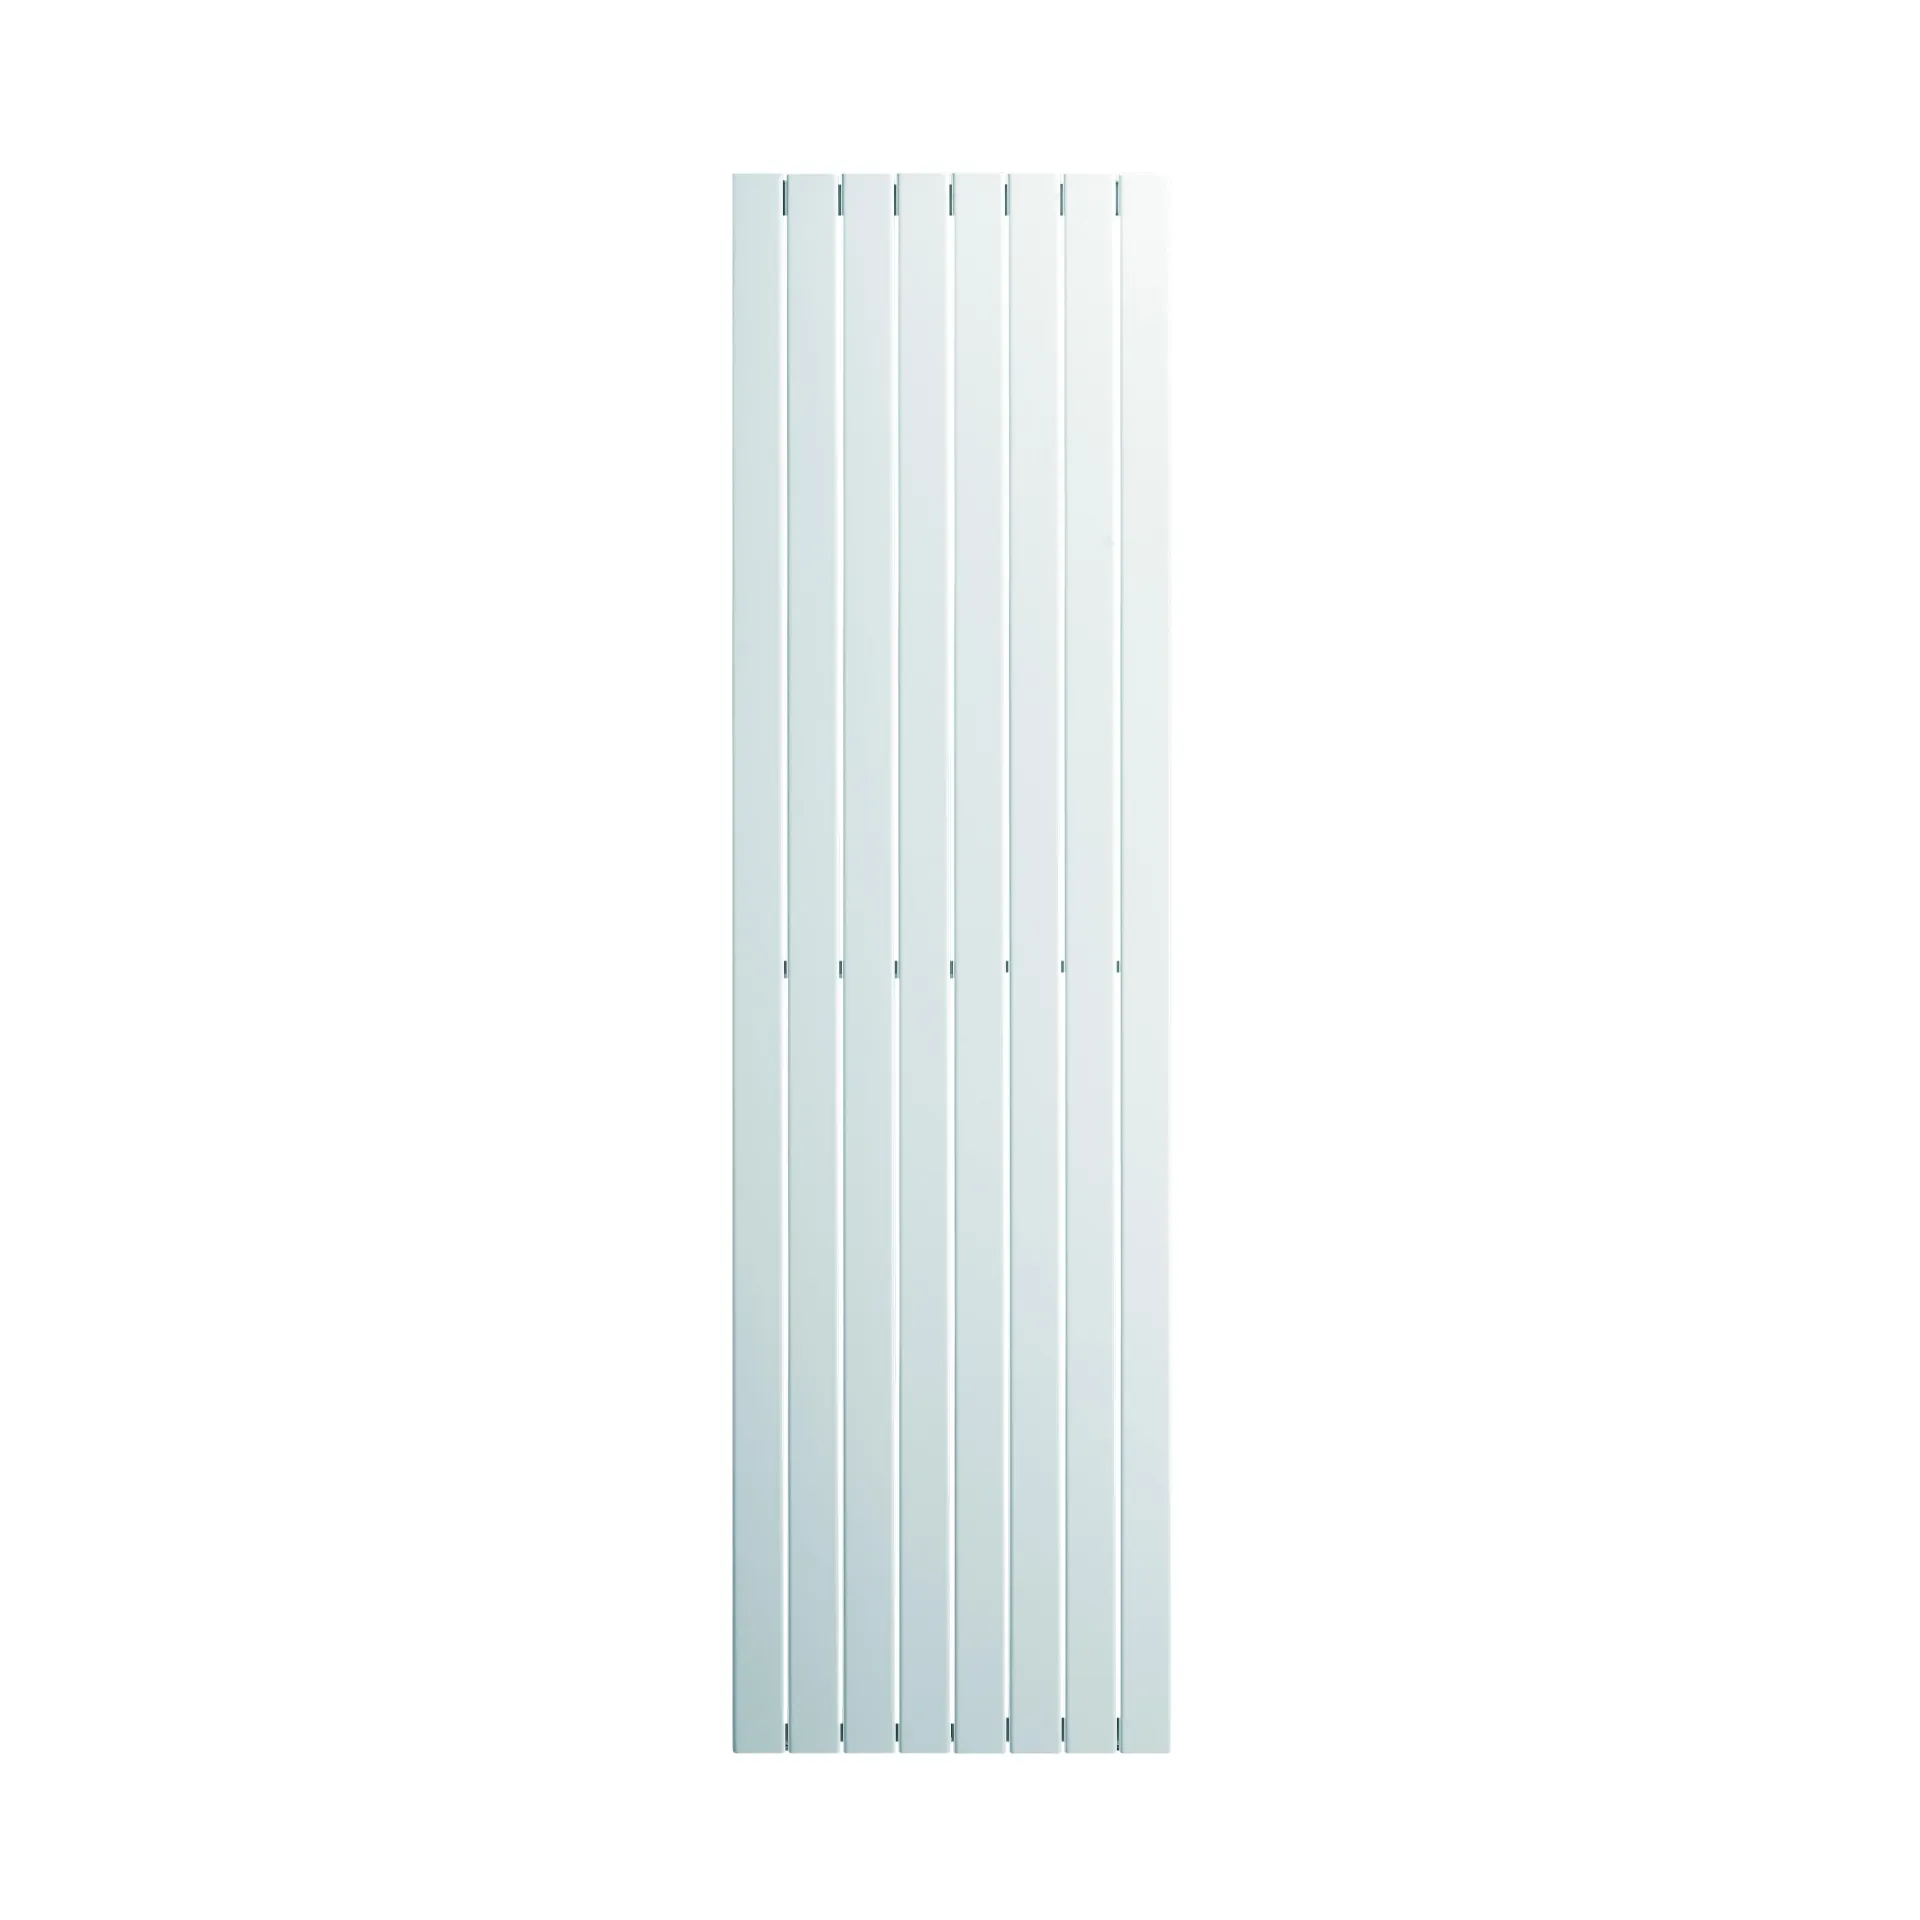 Jaga - Panel Plus Verticaal Wand - 2600x940mm - 3018 Watt - Type 11 - Verkeerswit satin